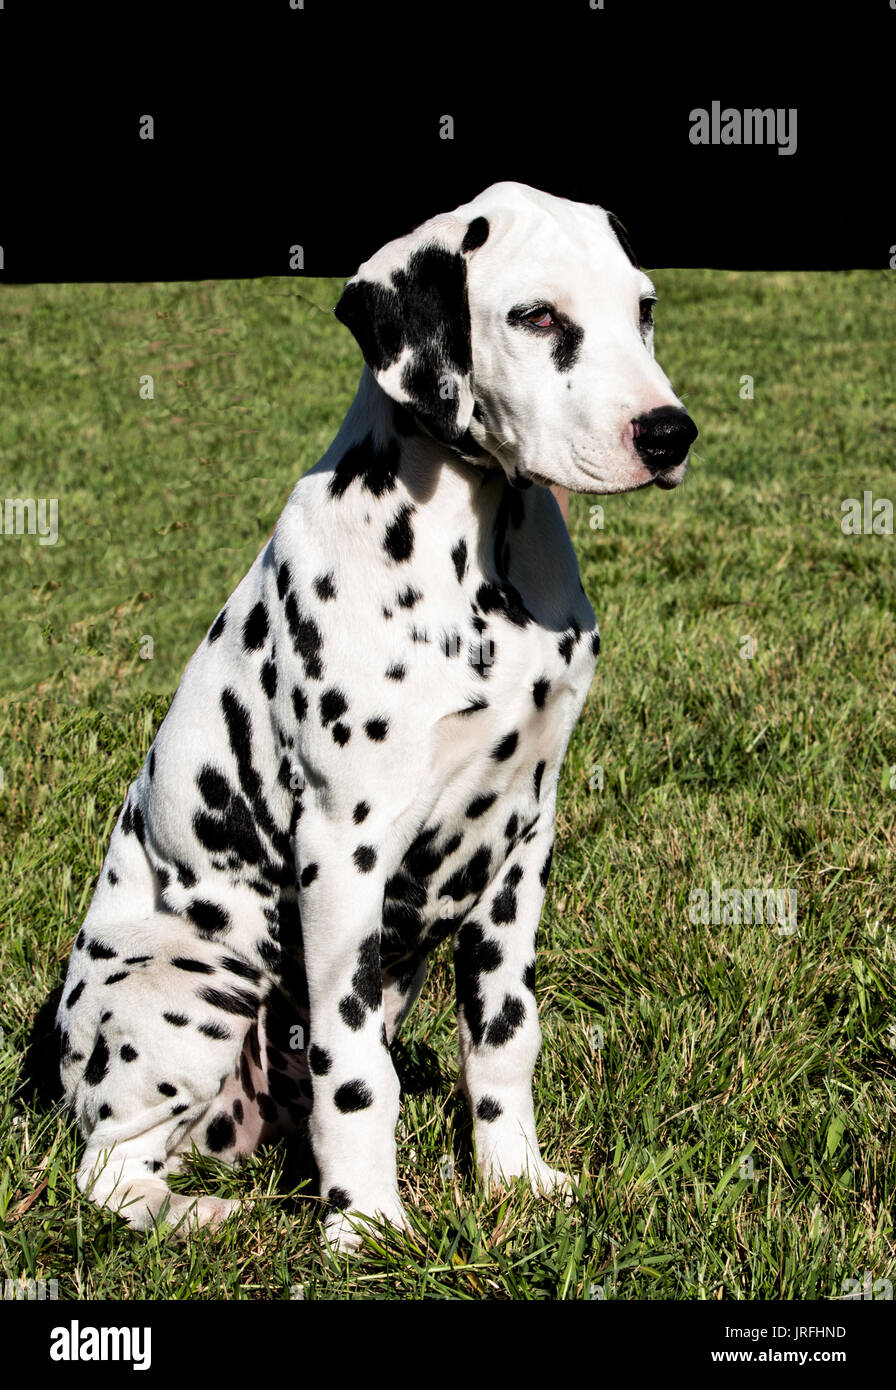 Noir et blanc chiot Dalmatien dog sitting on grass Banque D'Images